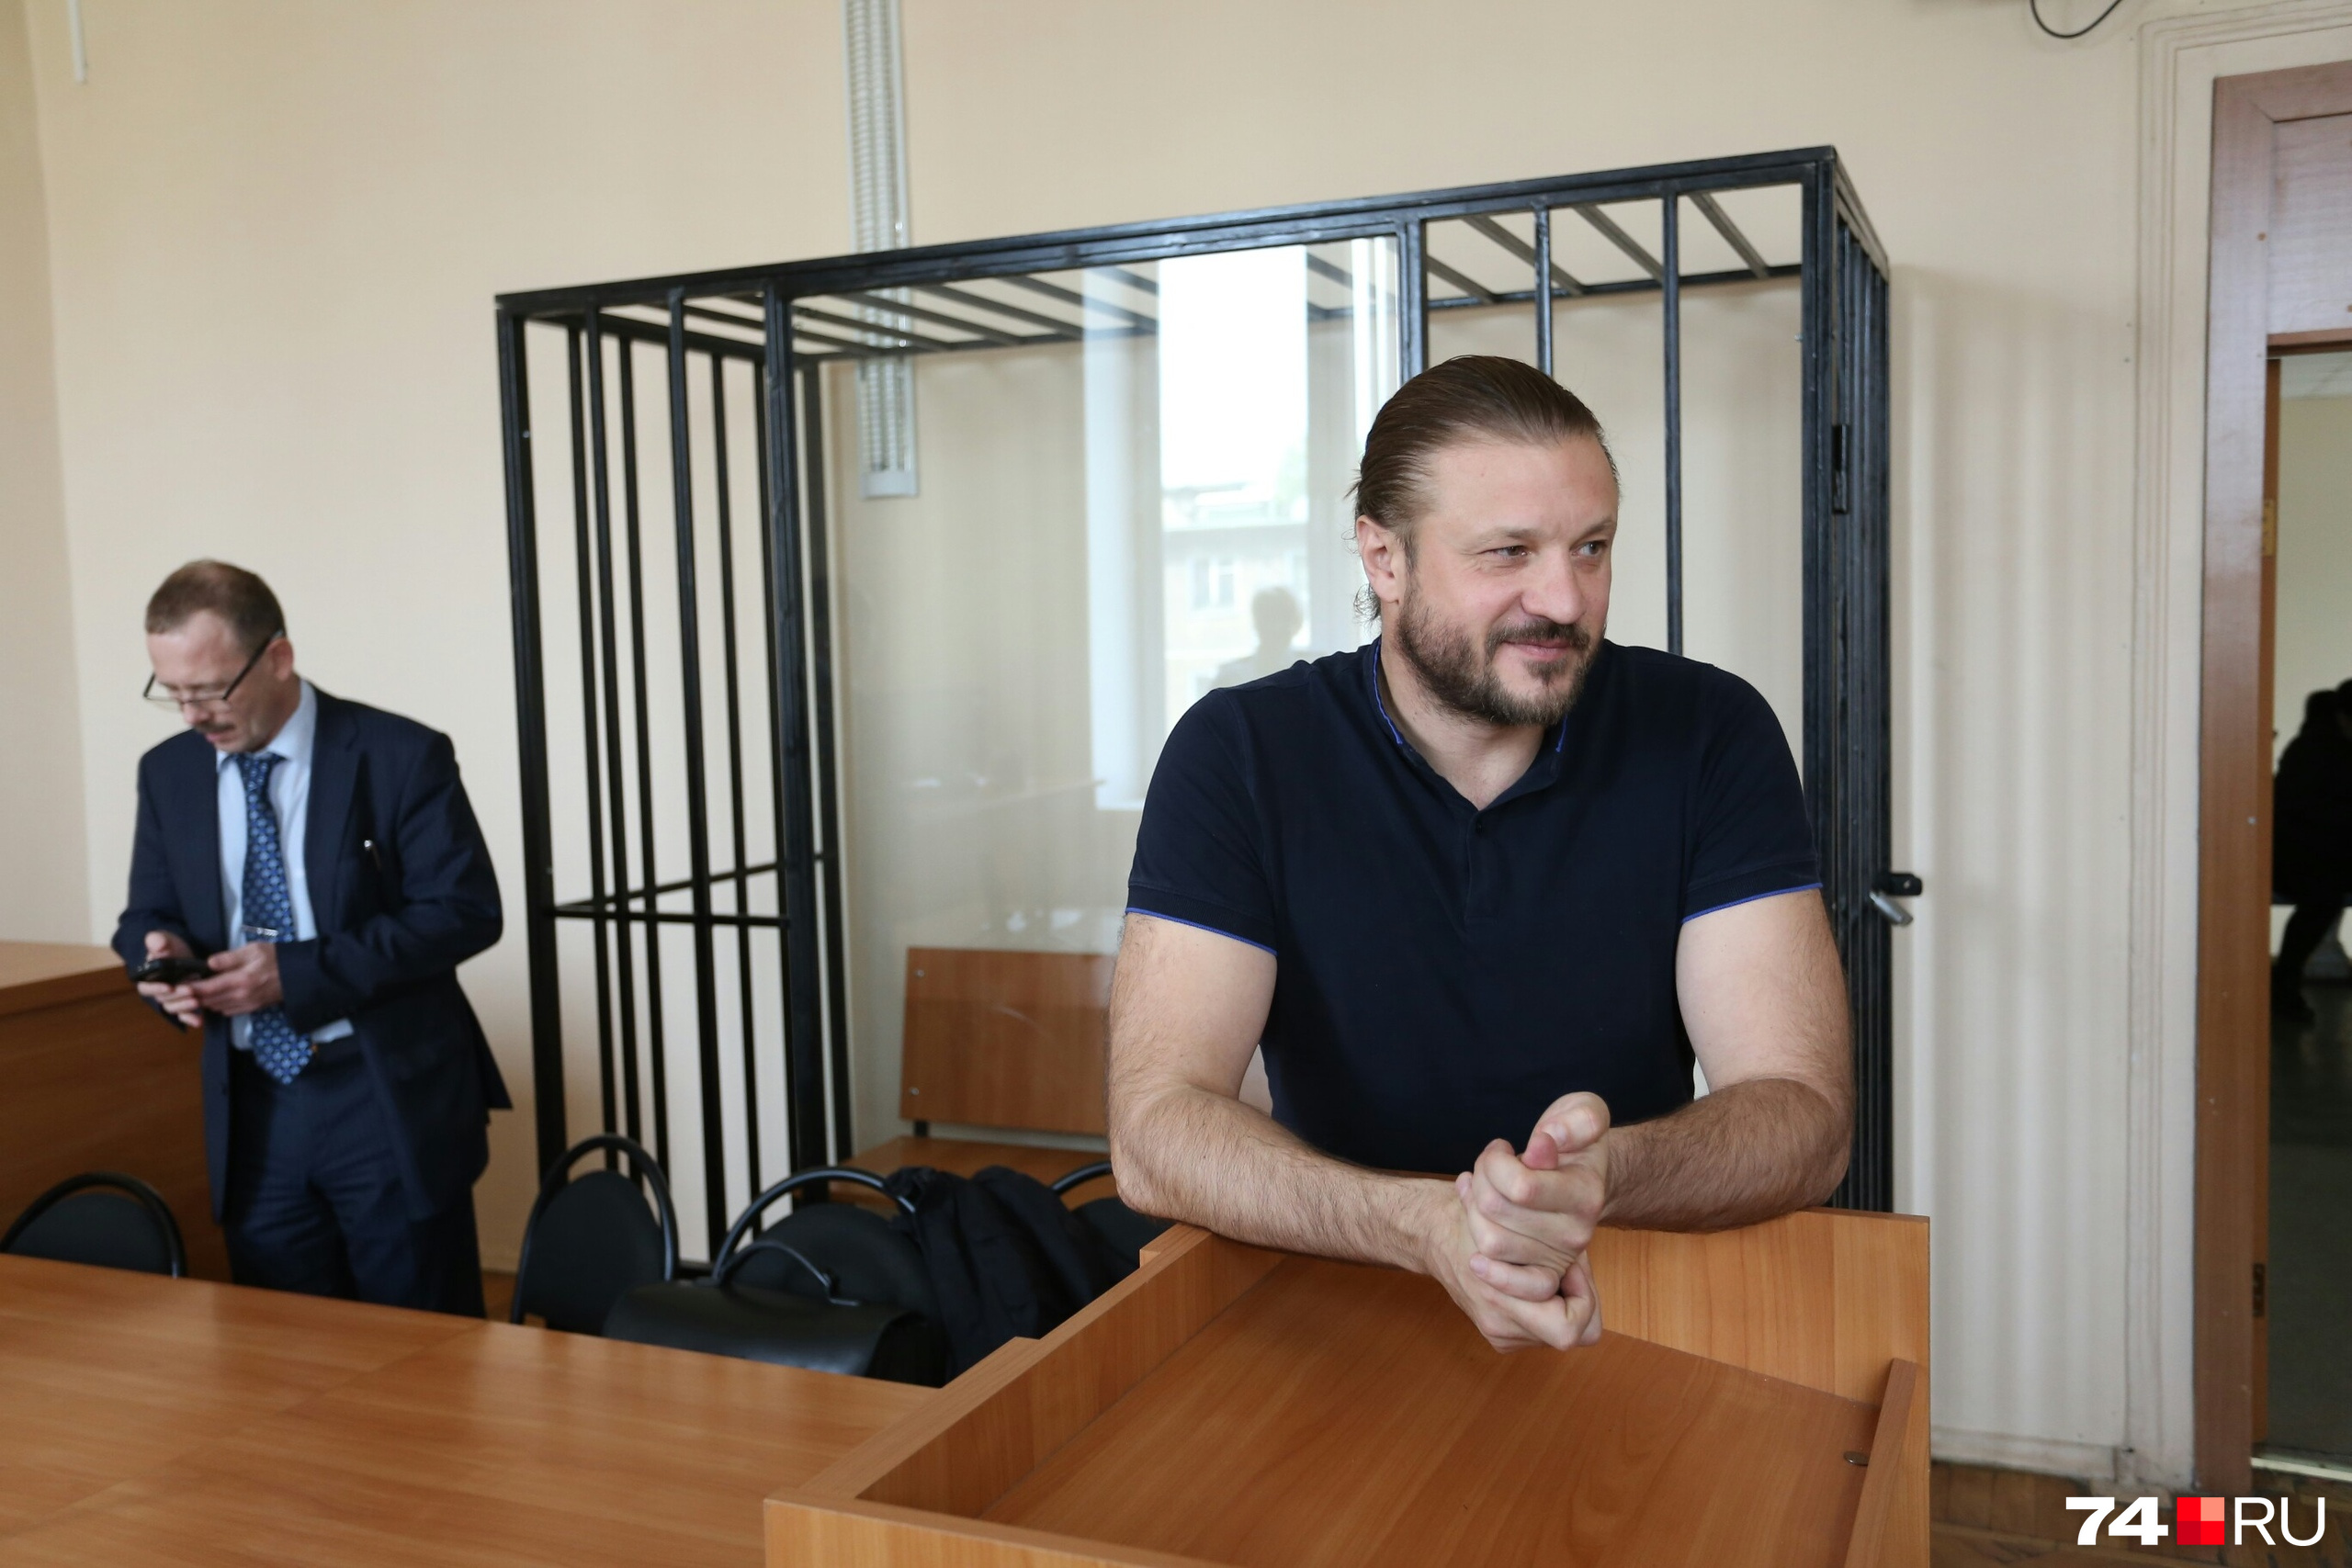 Перед началом оглашения приговора Николай Сандаков излучал сдержанную уверенность